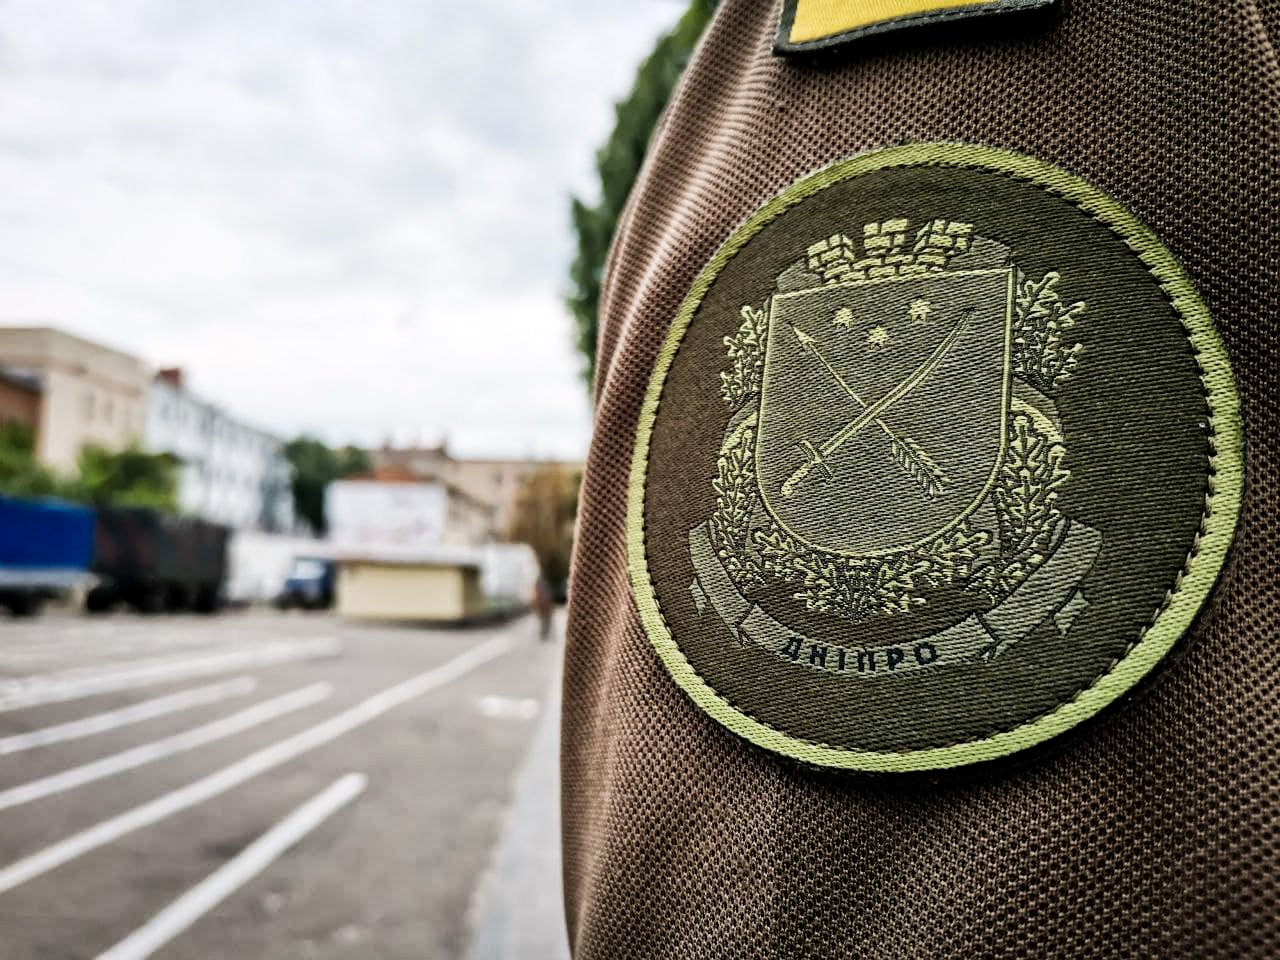 В Днепре Национальная гвардия Украины получила новые шевроны с гербом города, - ФОТО